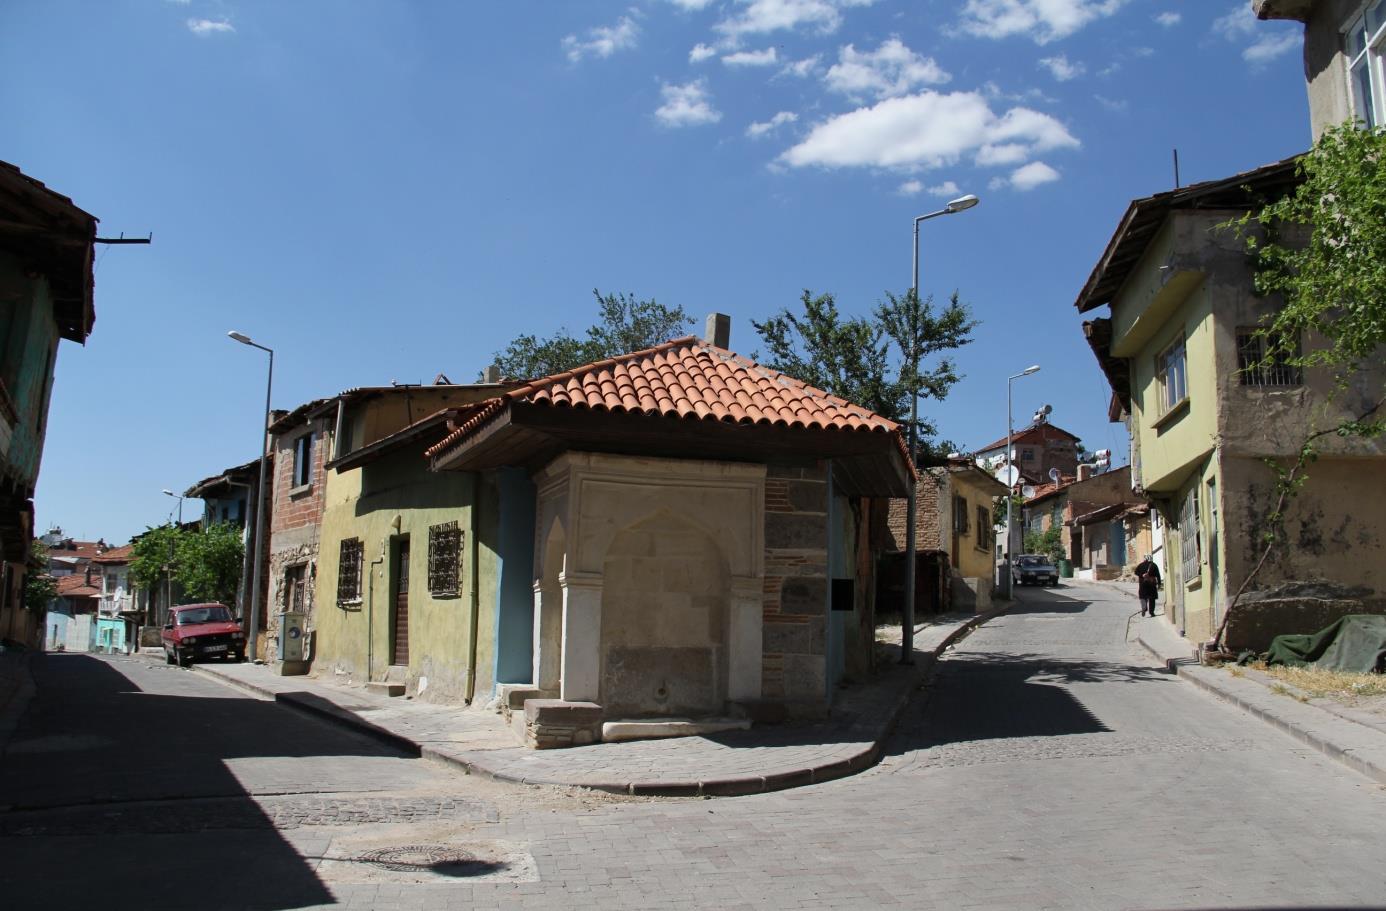 Foto 10: Karaağaç Mahallesi nde bitişik düzen ve düşük kalitede konut alanlarından genel bir görünüm (Uşak